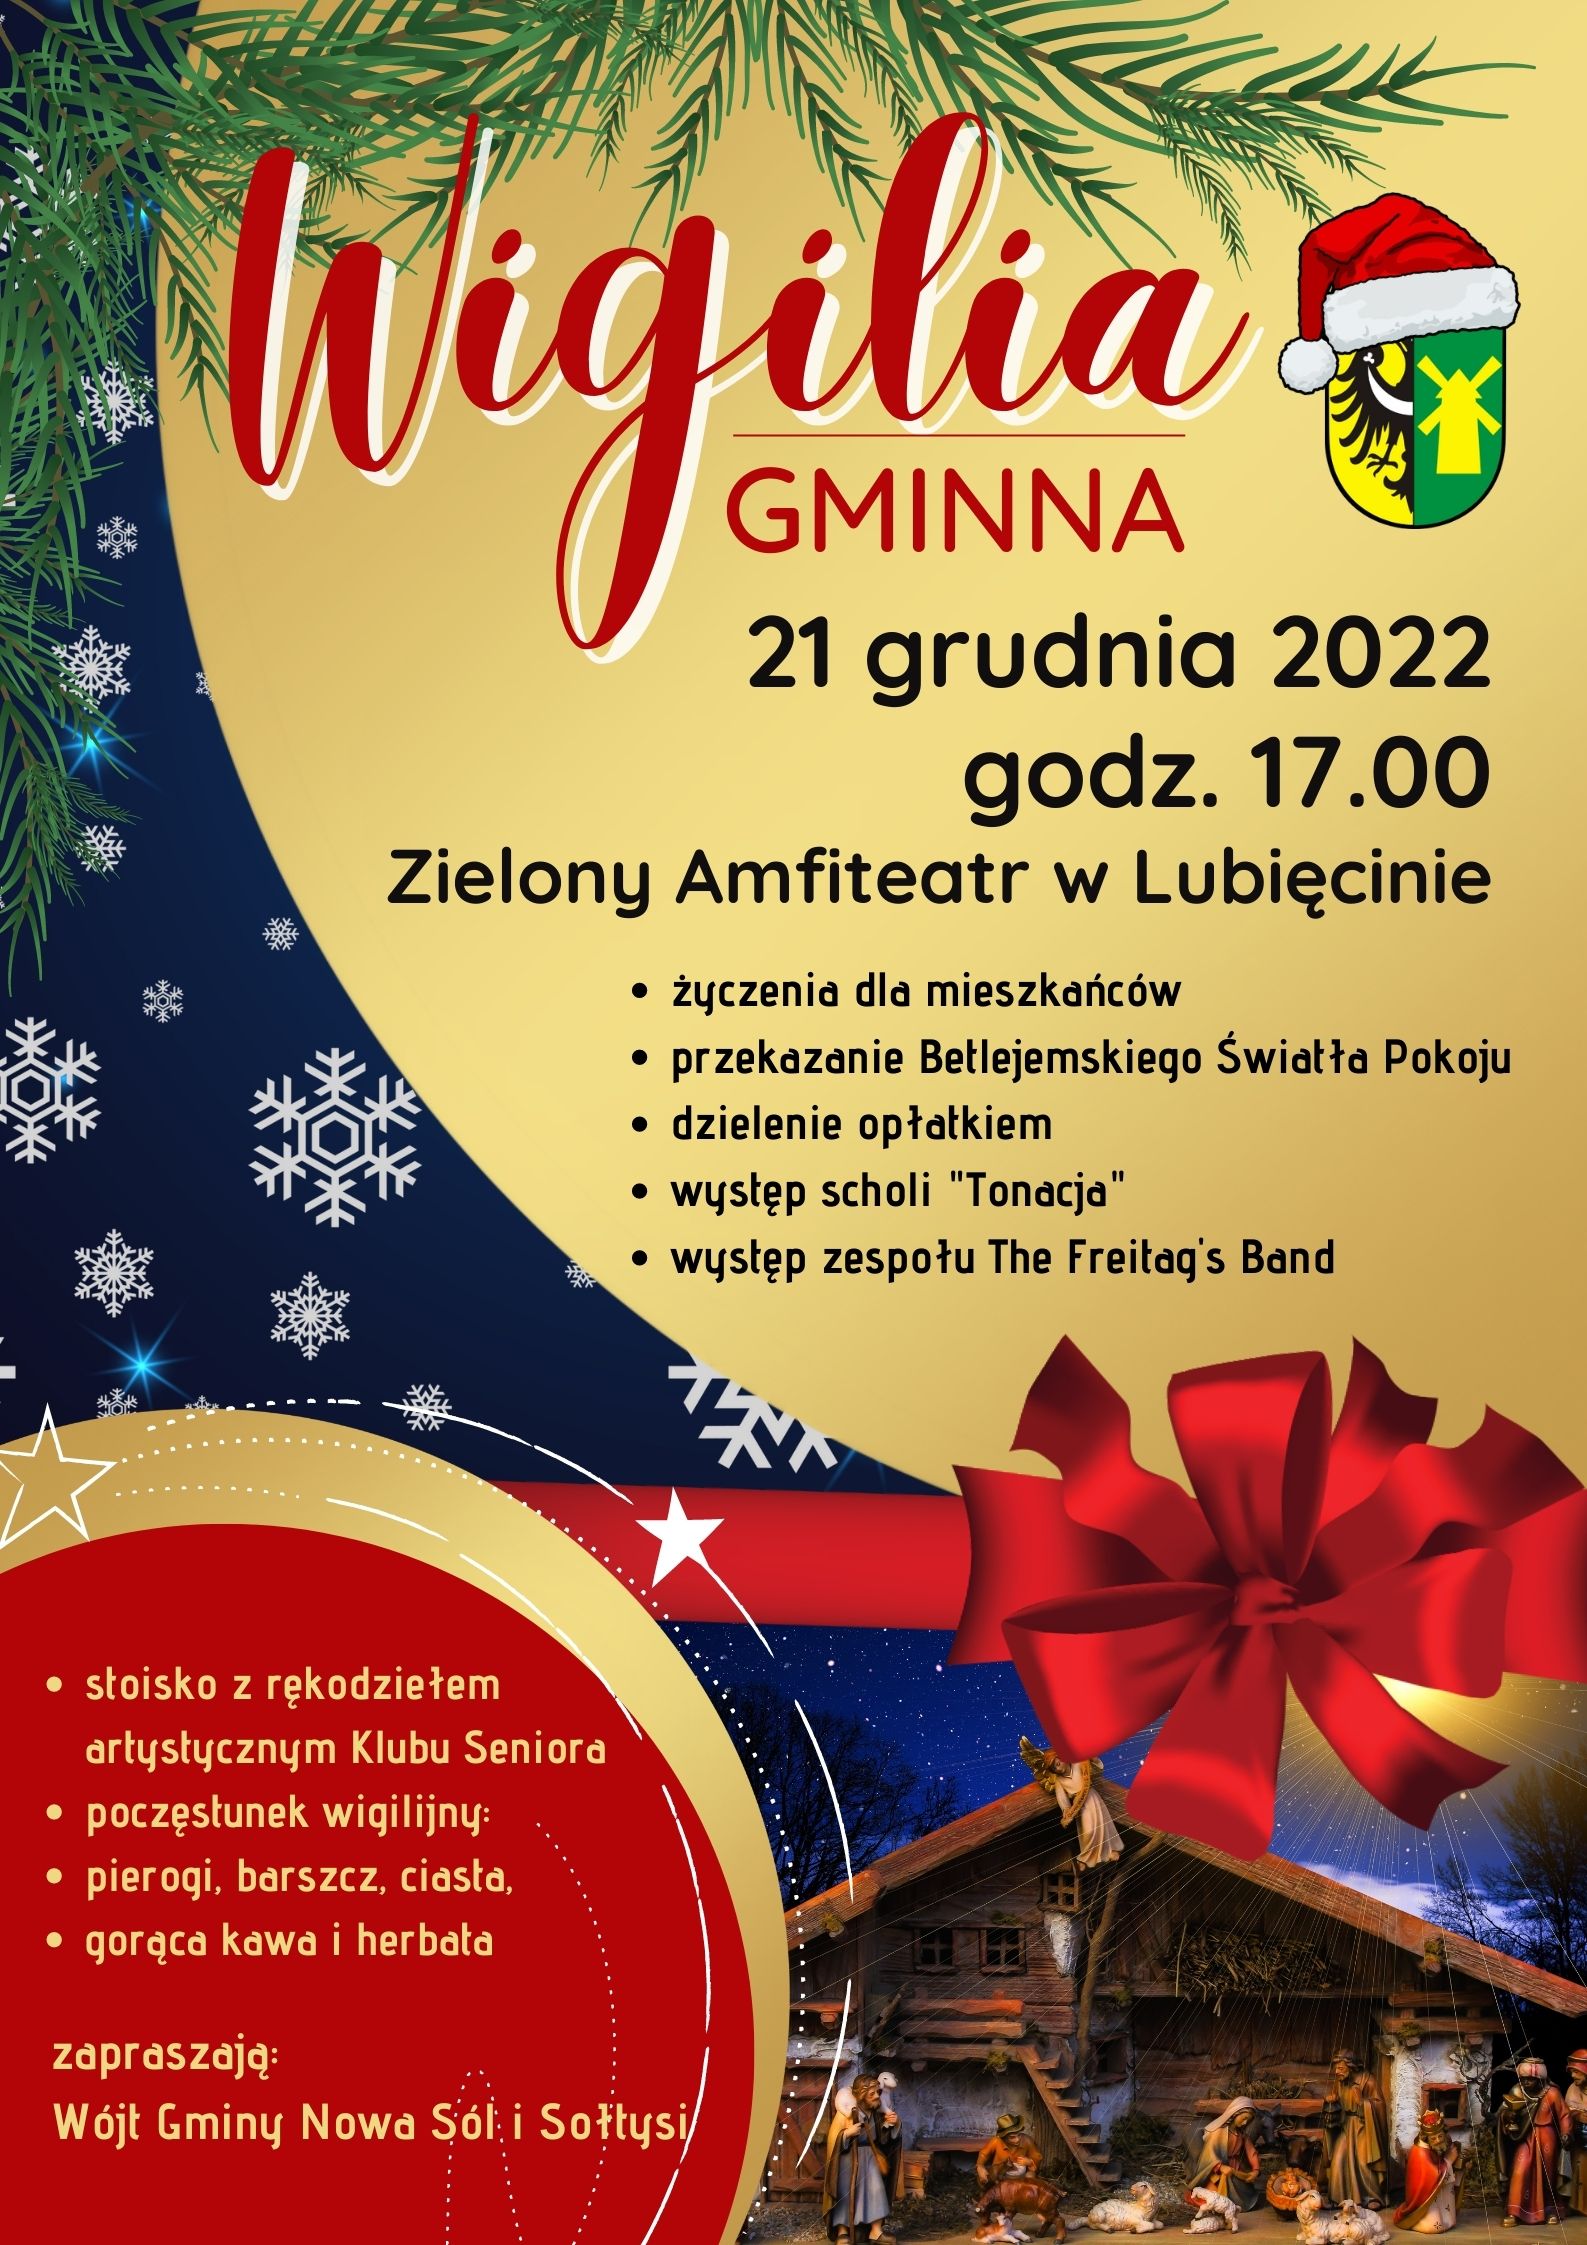 plakat promujący wigilię gminną w Zielonym Amfiteatrze w Lubięcinie